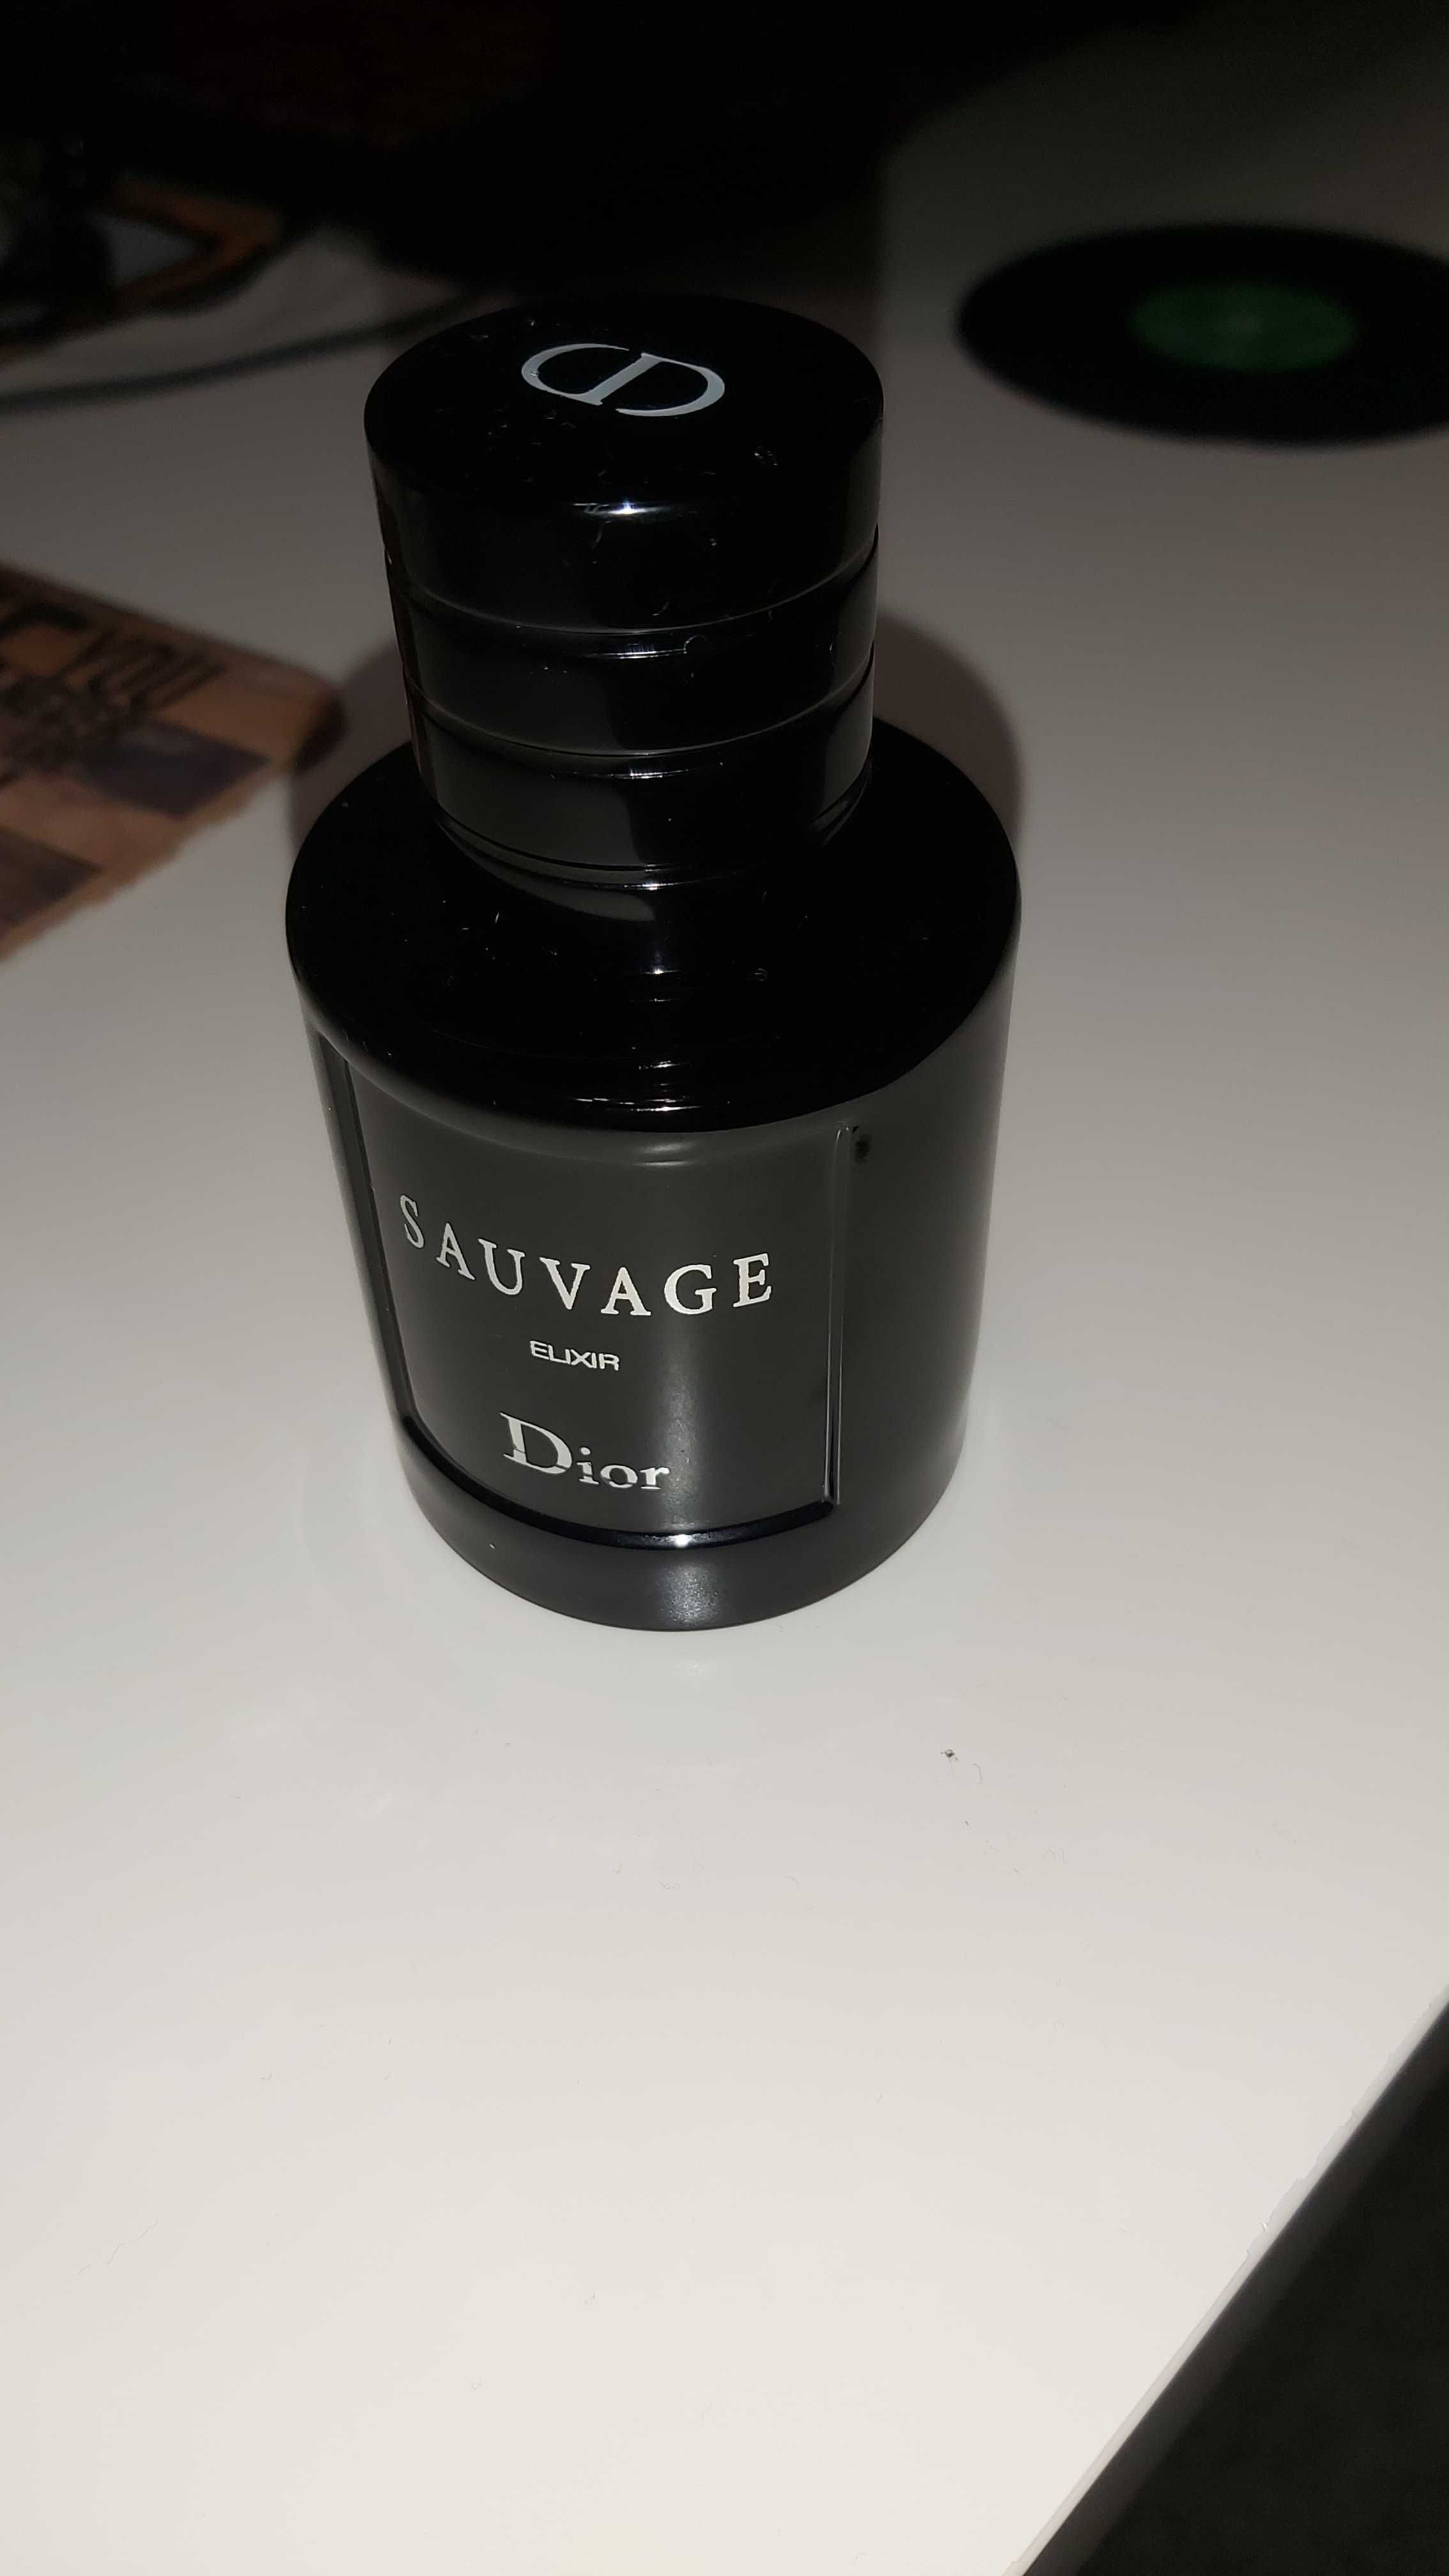 Dior Sauvage elixir 60 ml Dior homme intense 100 ml